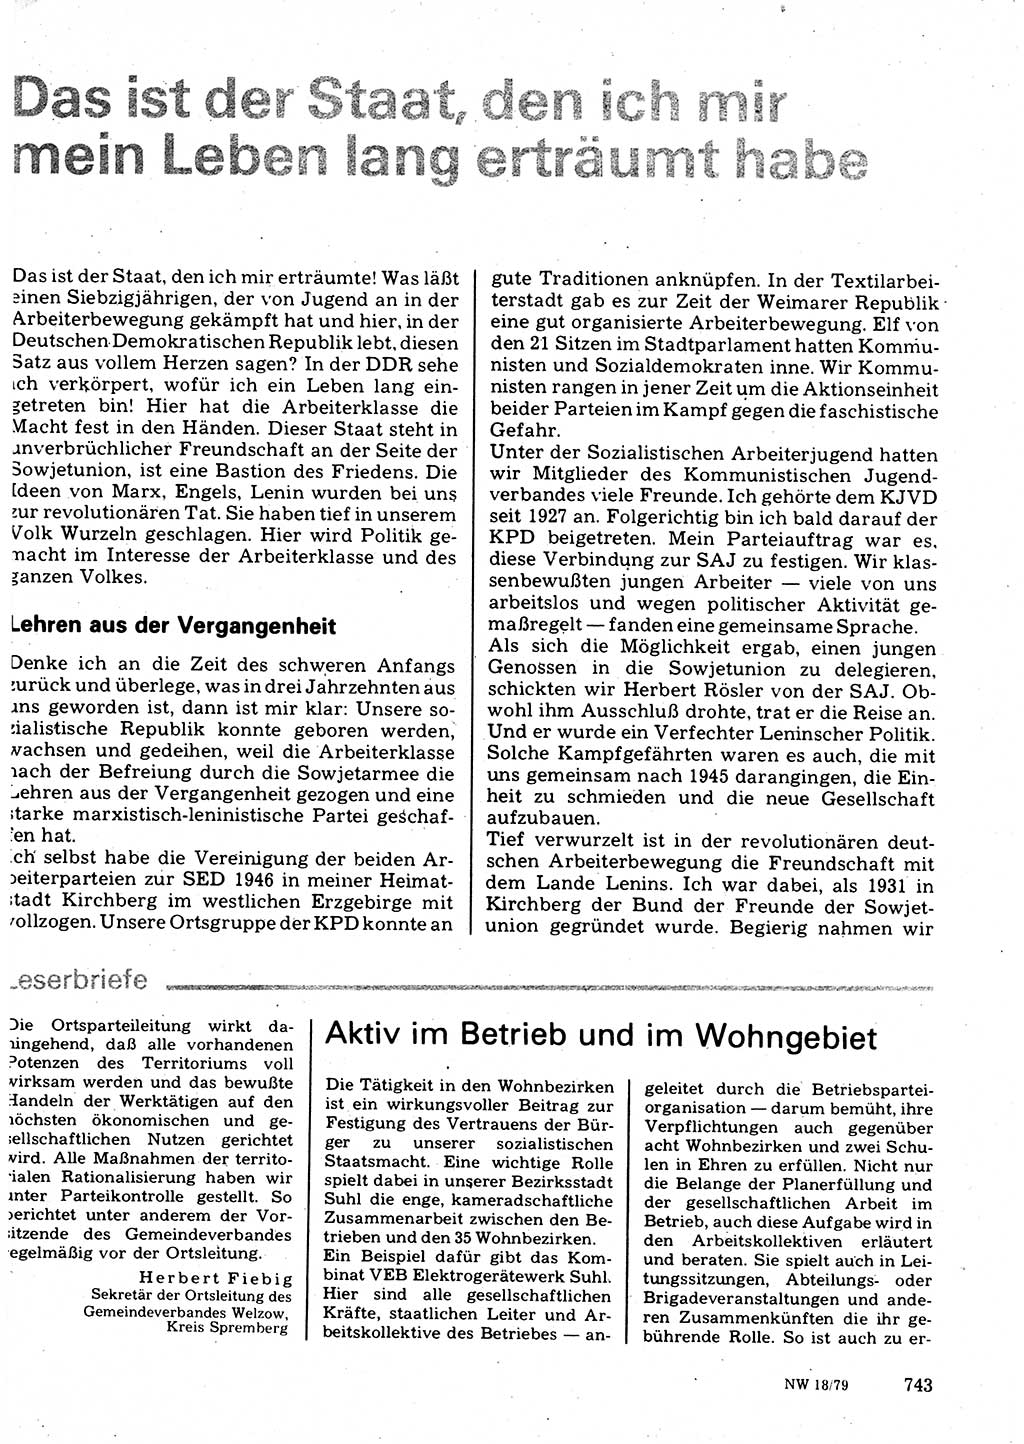 Neuer Weg (NW), Organ des Zentralkomitees (ZK) der SED (Sozialistische Einheitspartei Deutschlands) für Fragen des Parteilebens, 34. Jahrgang [Deutsche Demokratische Republik (DDR)] 1979, Seite 743 (NW ZK SED DDR 1979, S. 743)